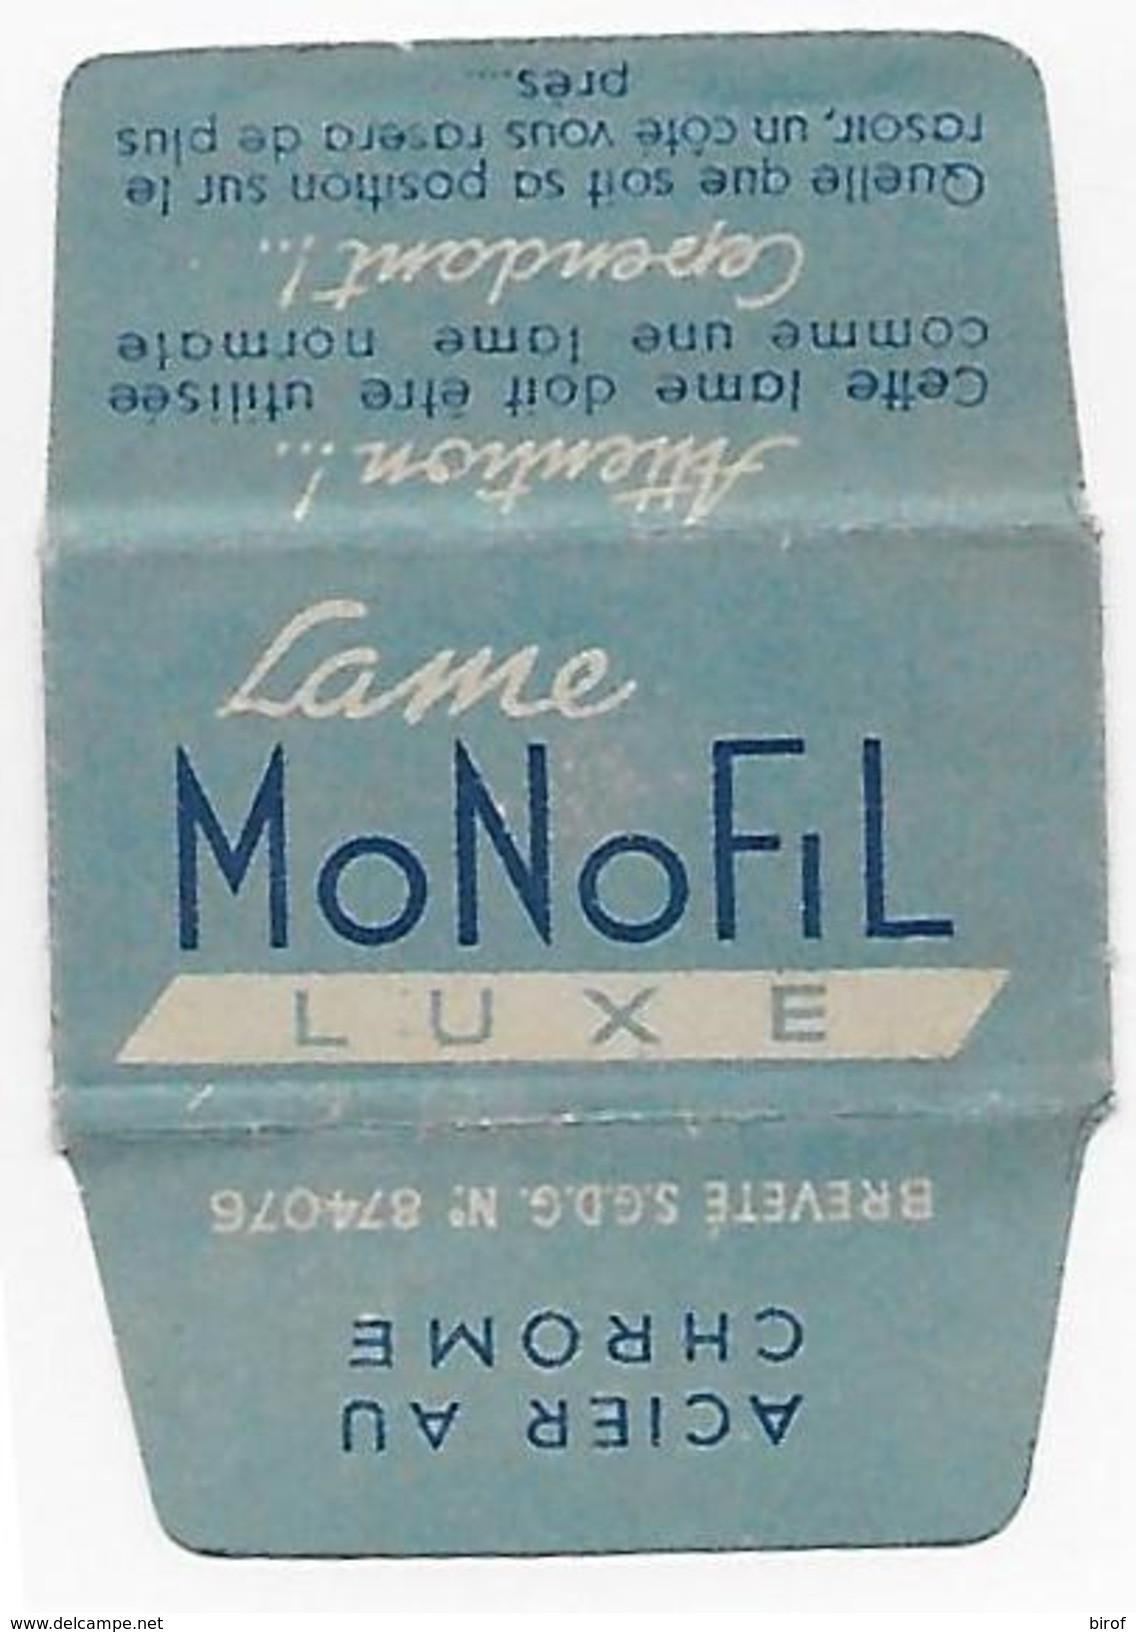 LAMETTA DA BARBA - LAME MONOFIL LUXE - Lamette Da Barba